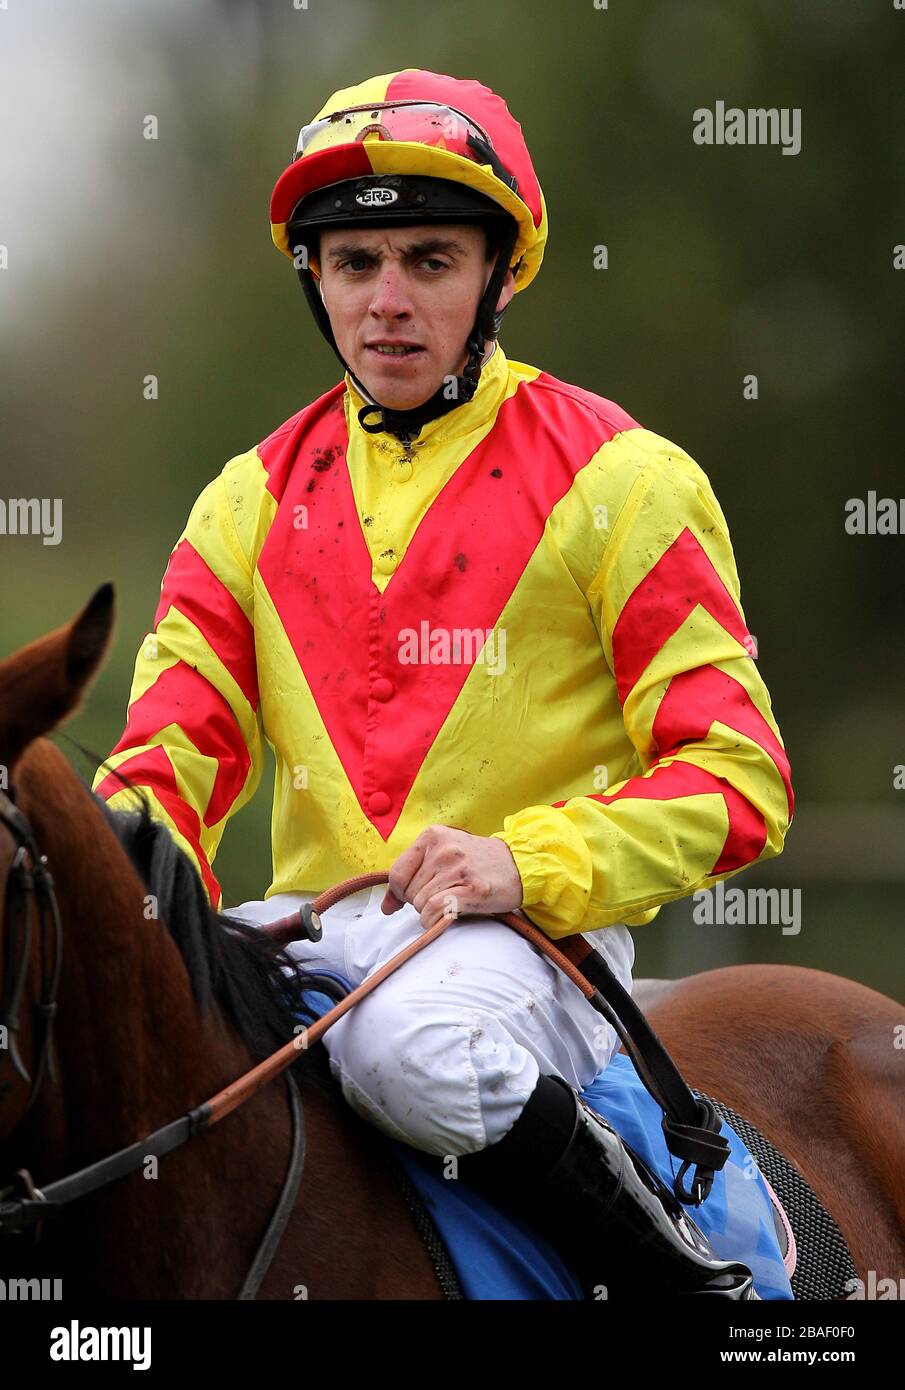 Frankie McDonald, jockey Stock Photo - Alamy